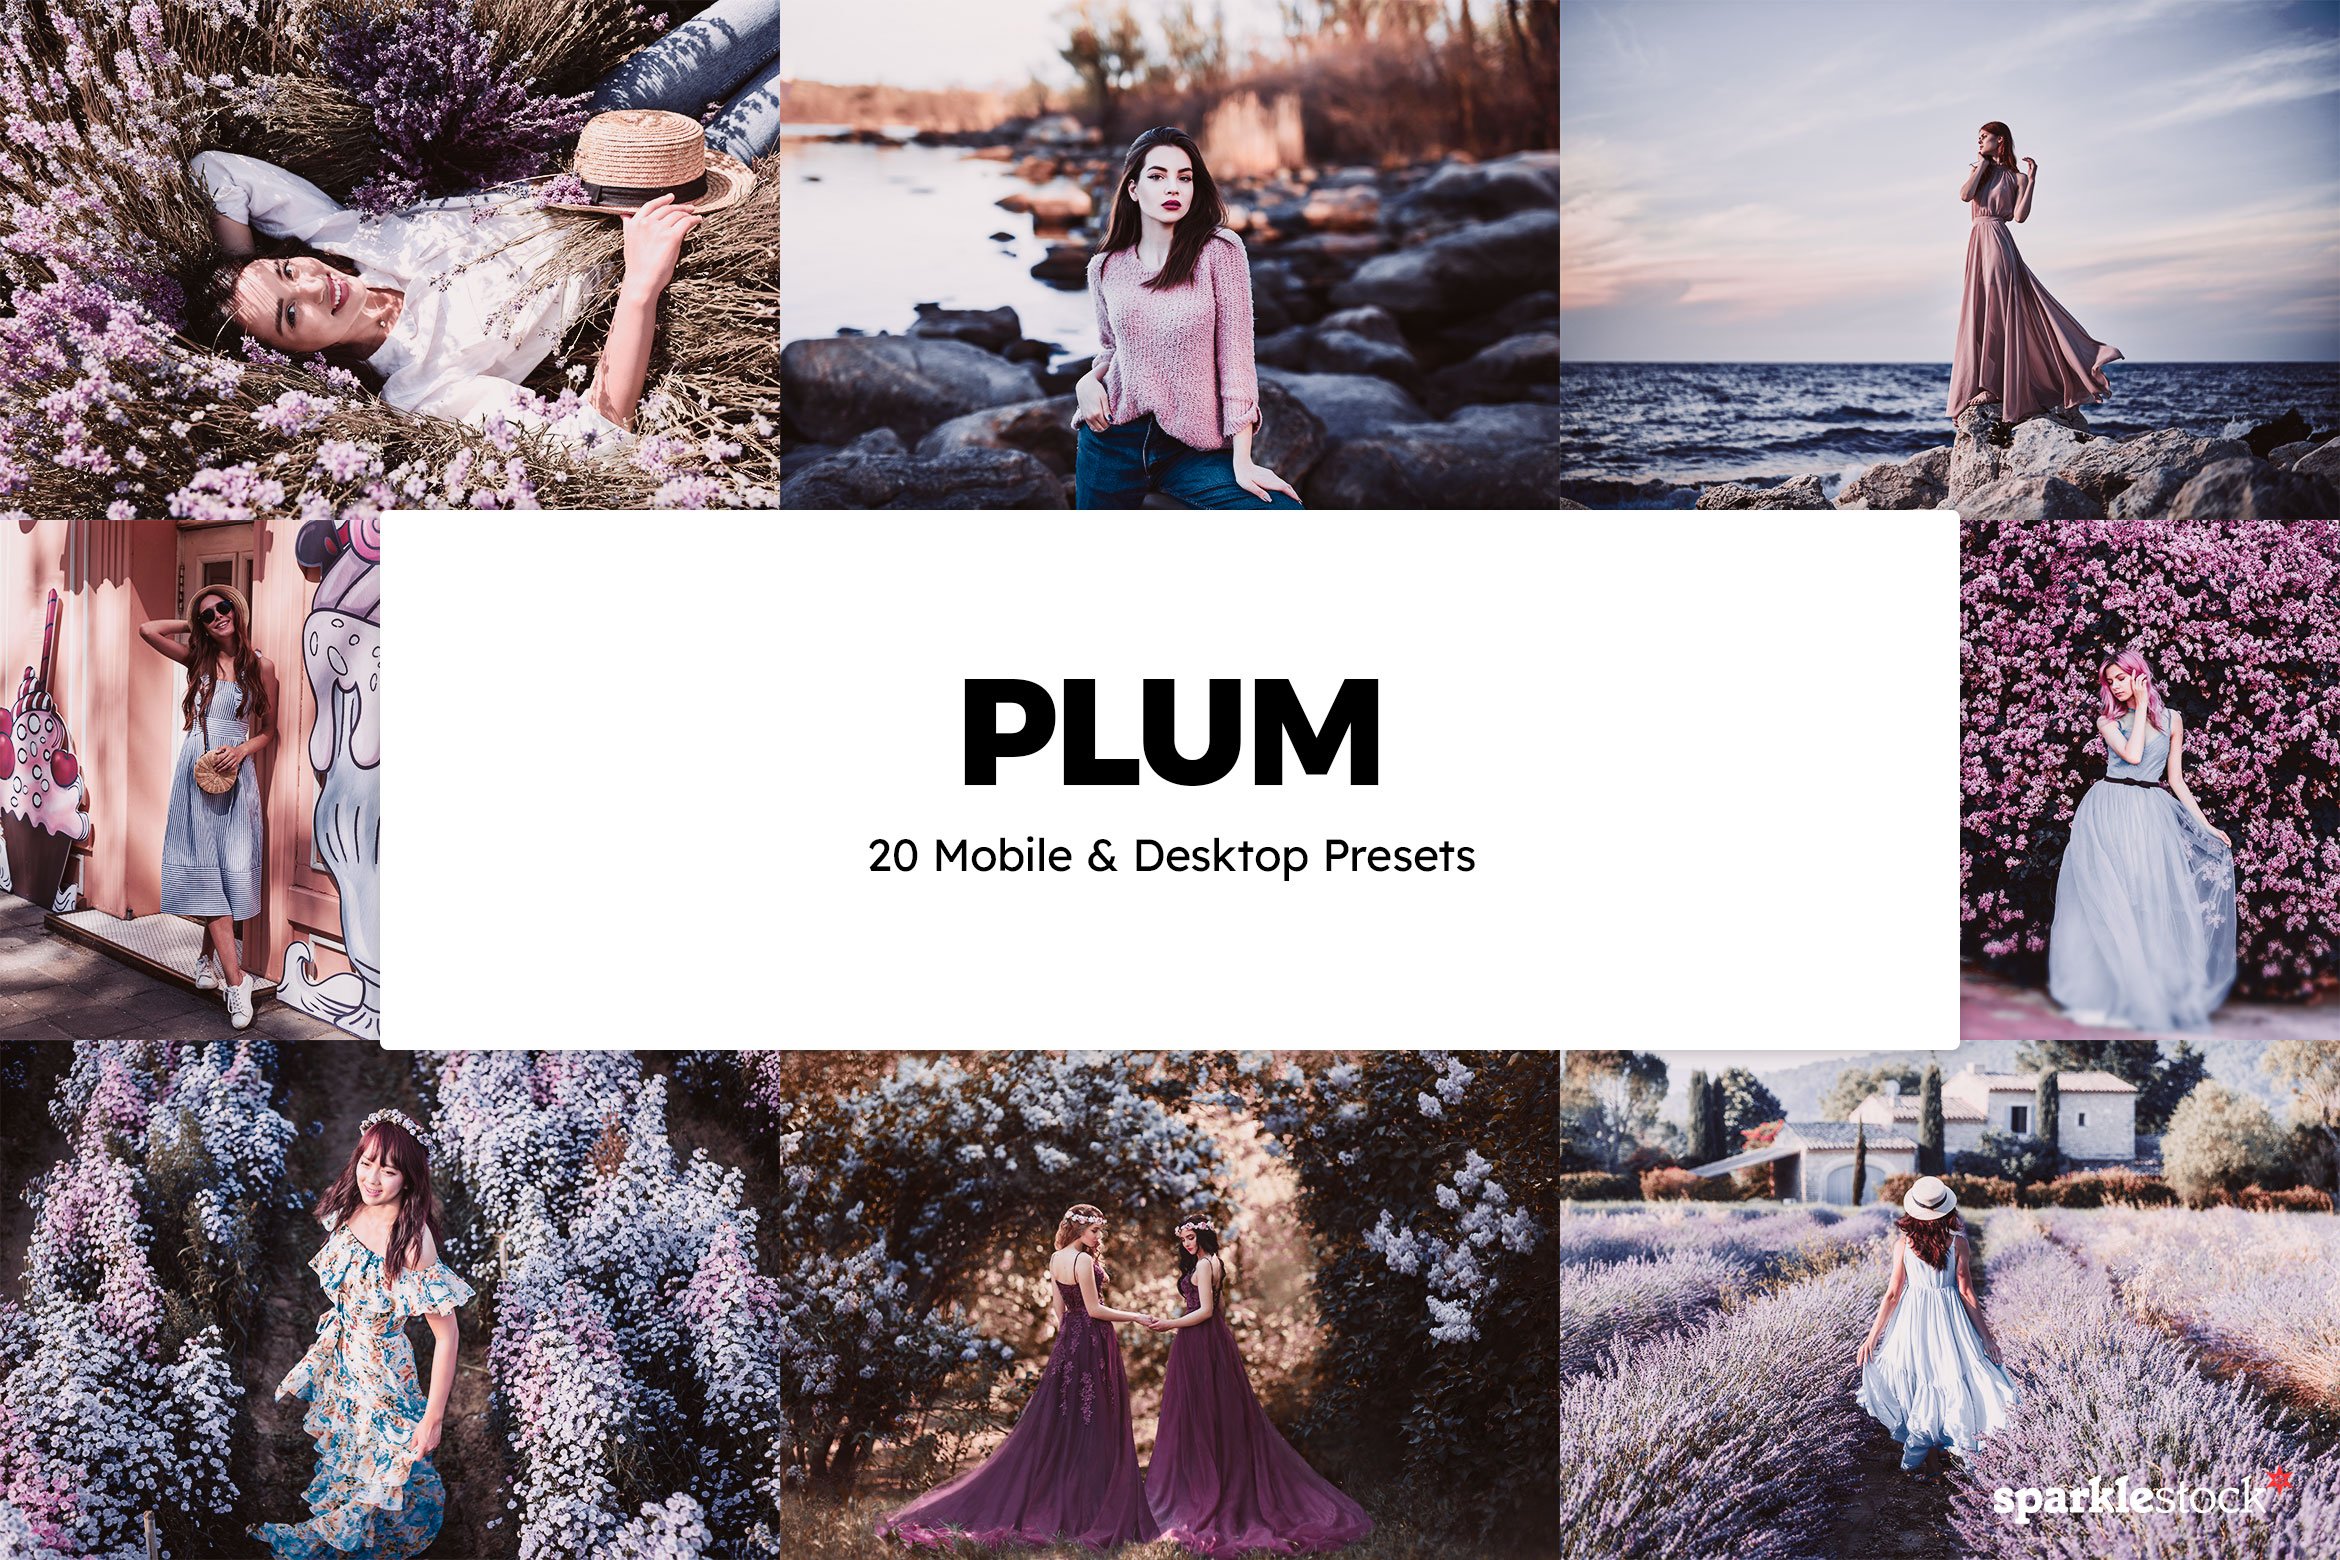 20 Plum Lightroom Presets & LUTscover image.